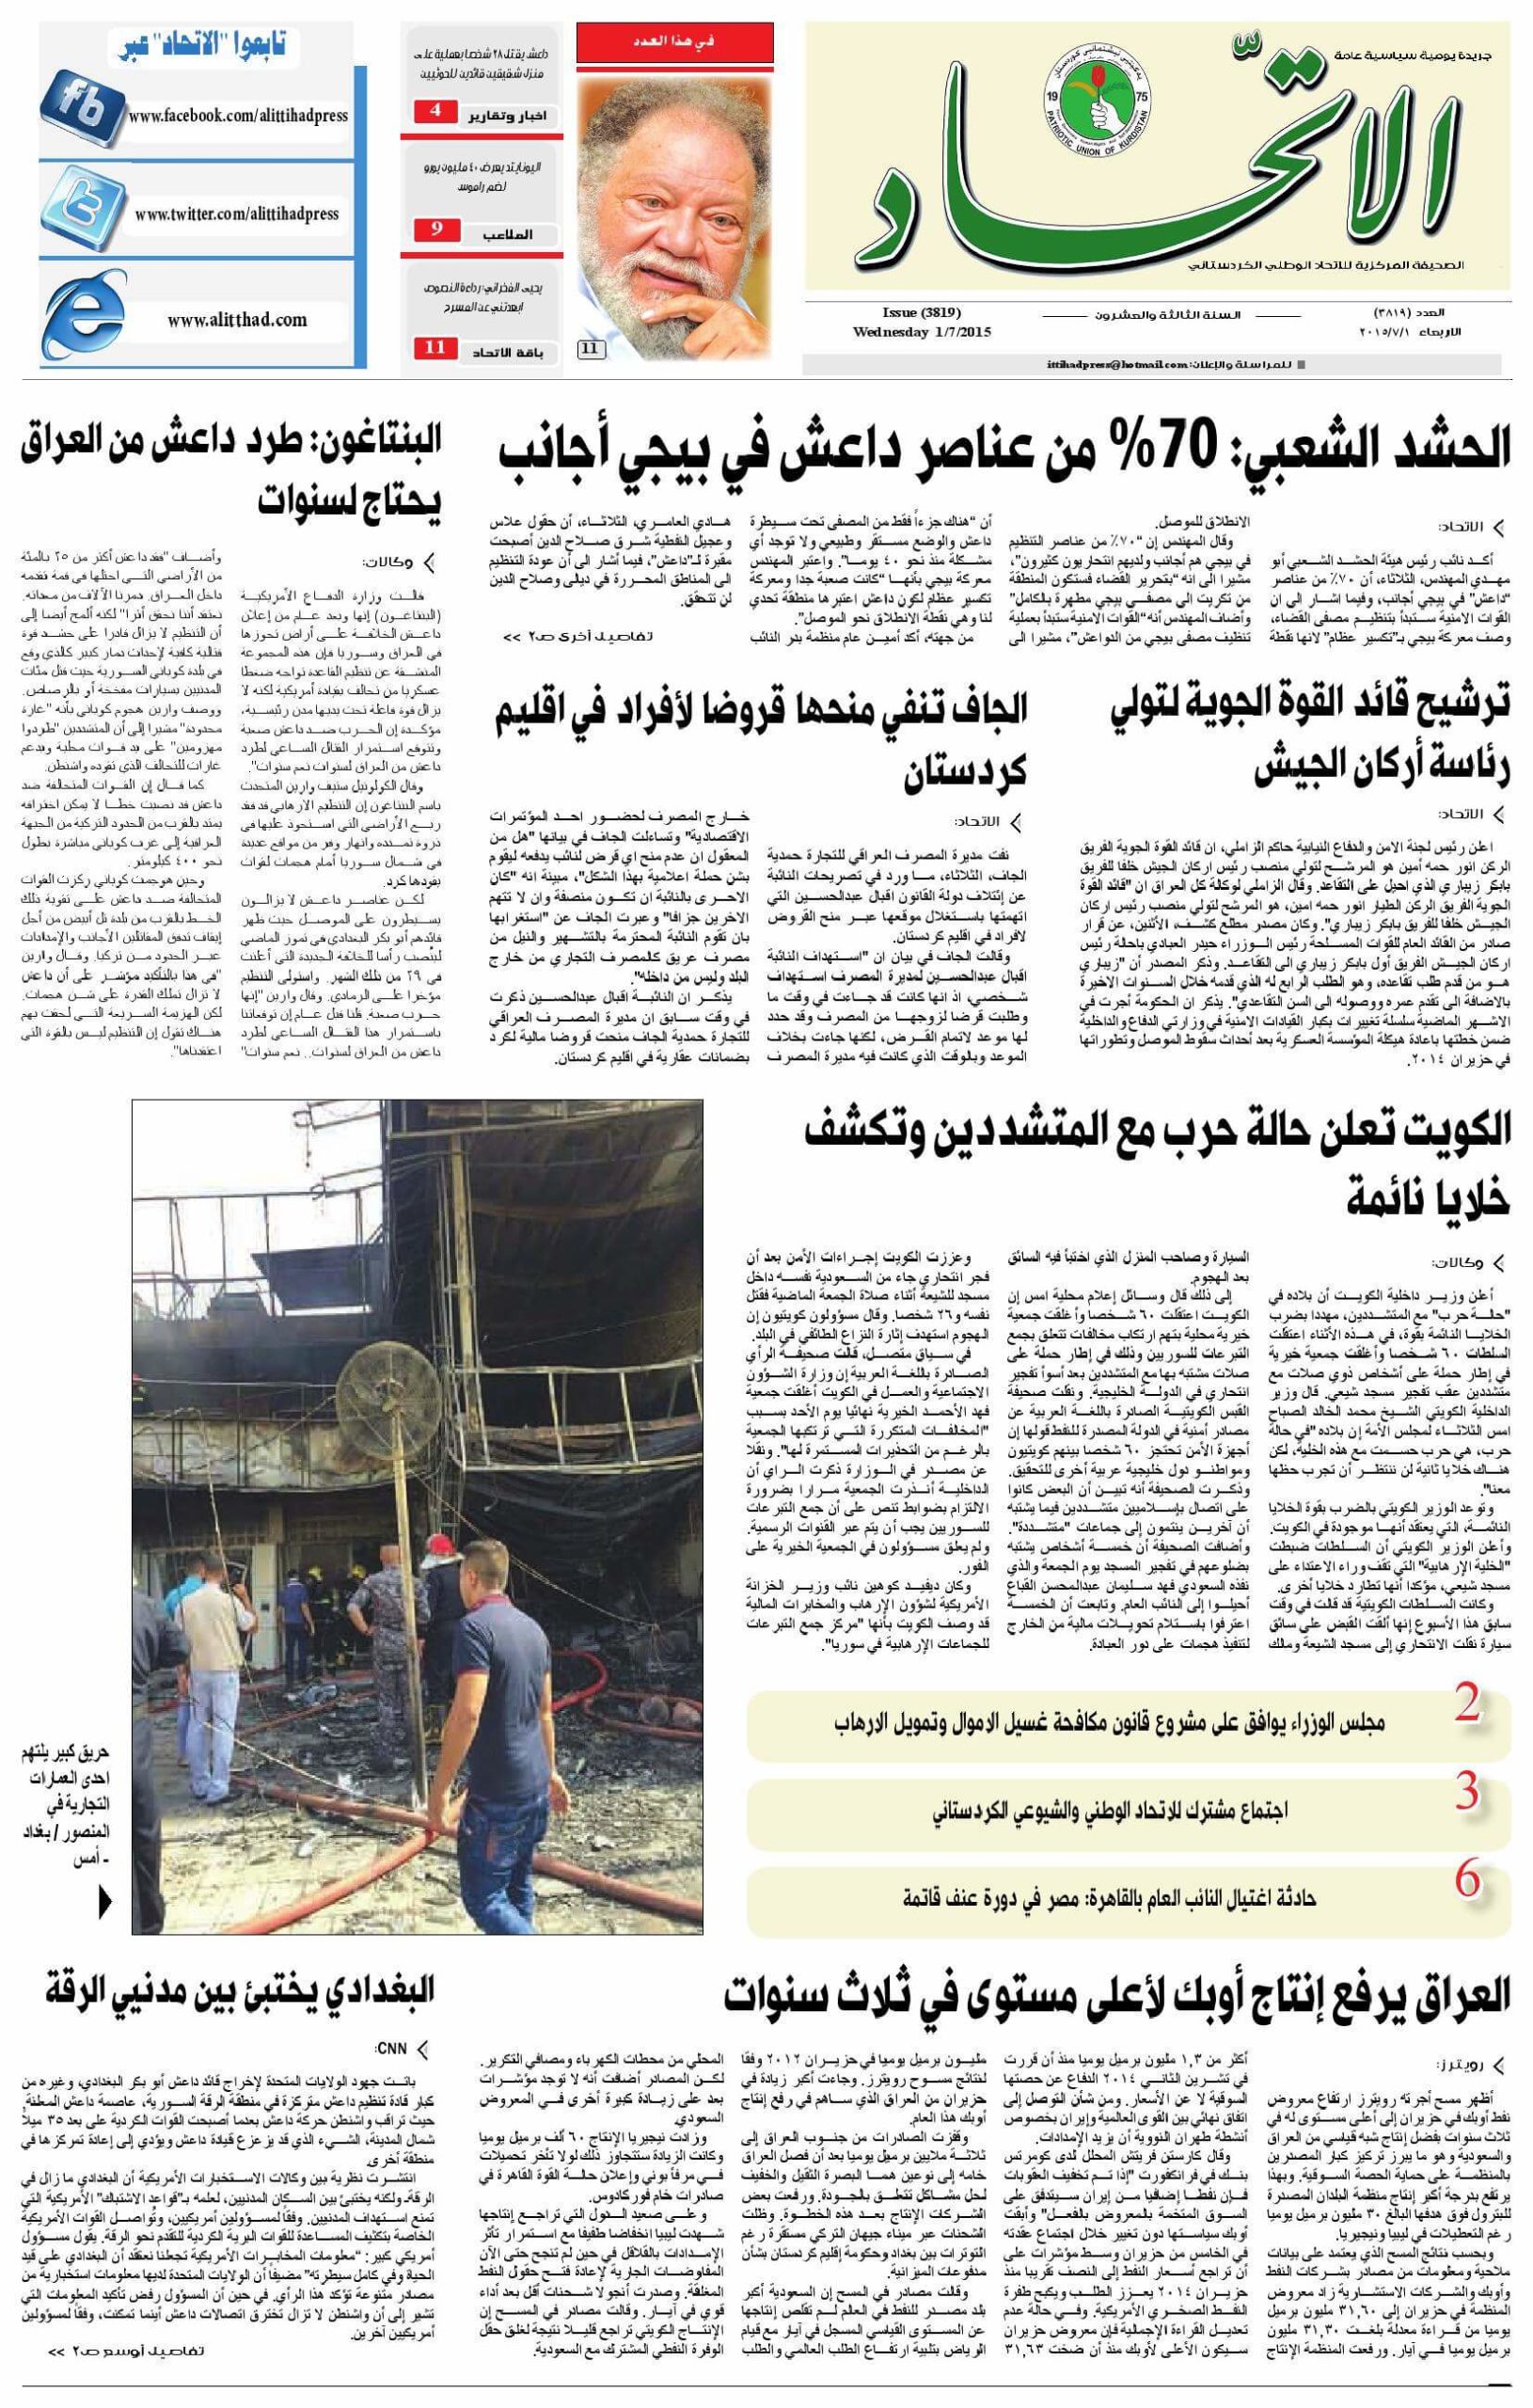 uae newspapers 6 al ittihad scaled